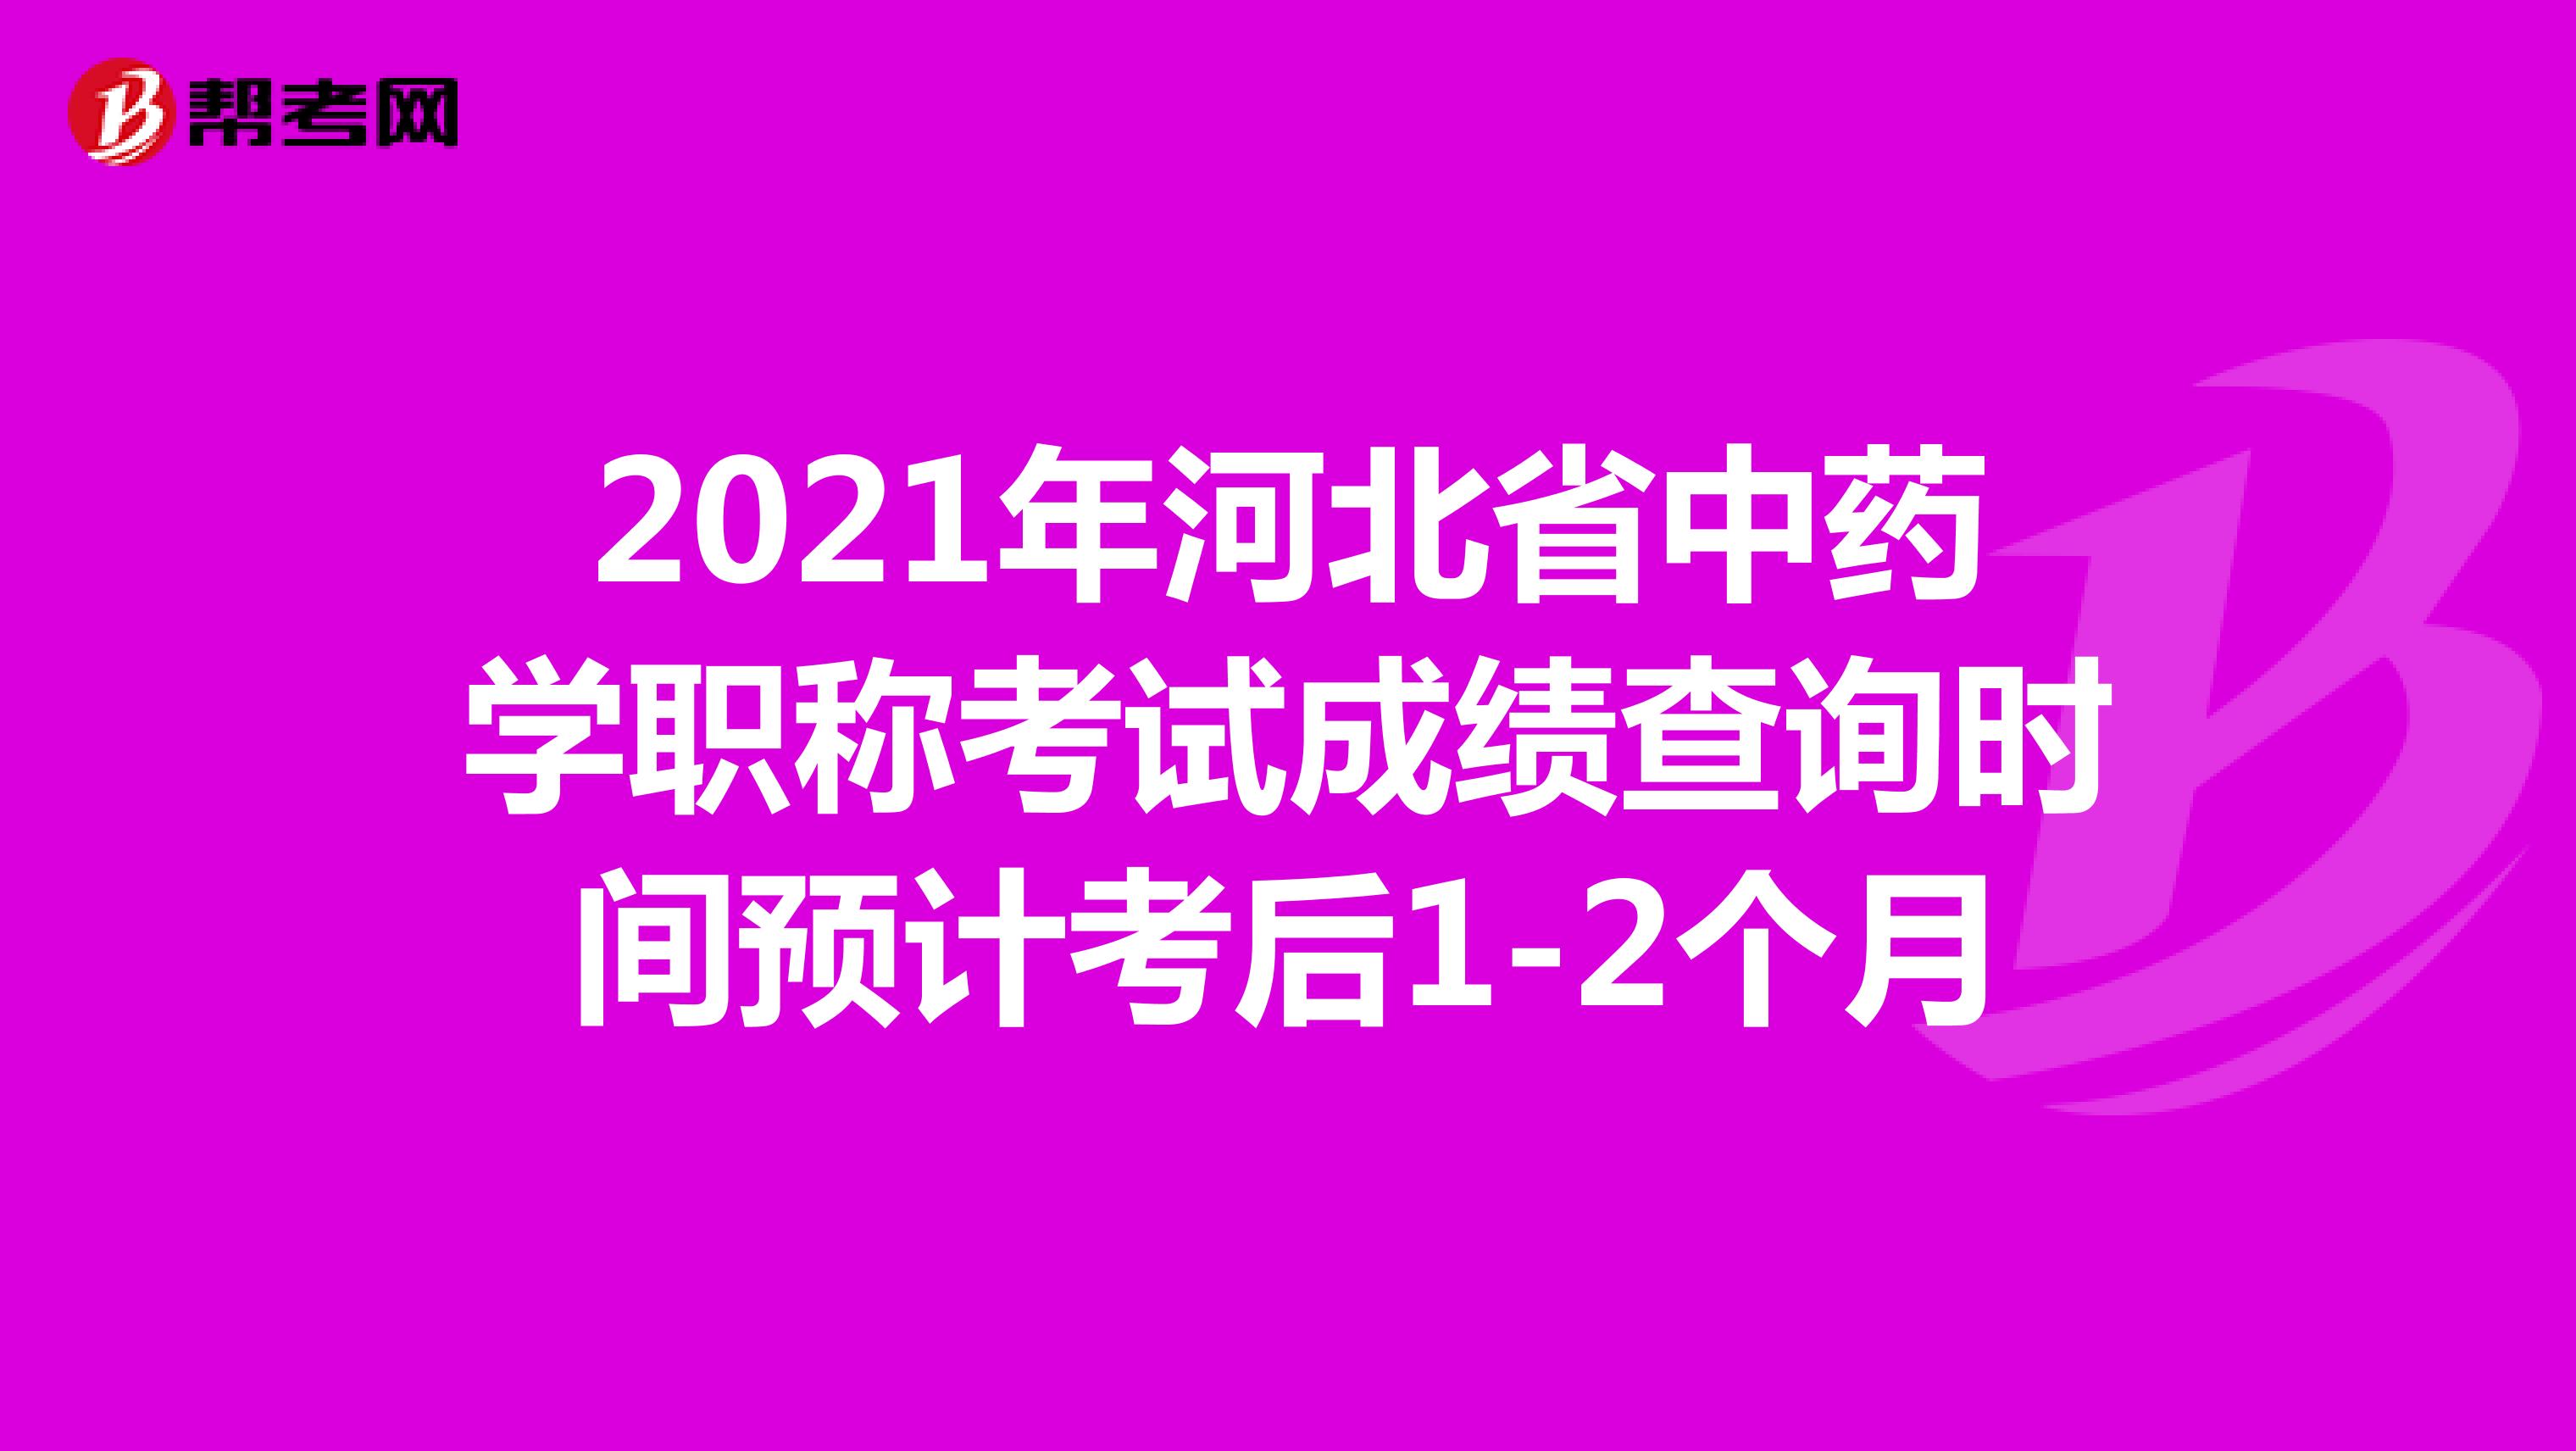 2021年河北省中药学职称考试成绩查询时间预计考后1-2个月